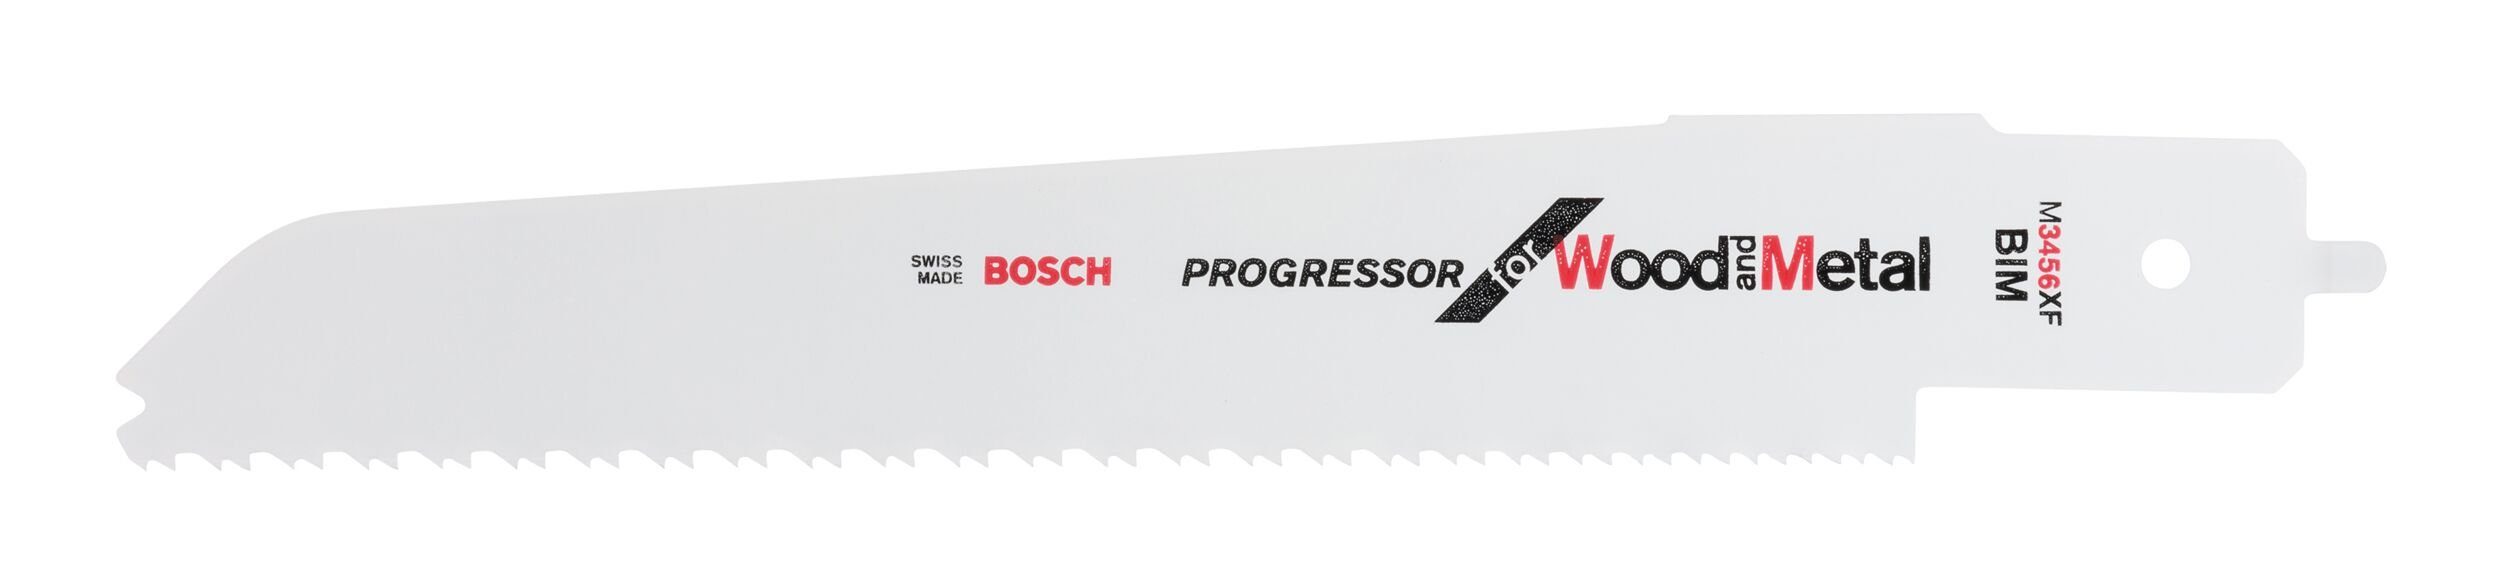 Progressor for and XF PFZ M Wood 3456 500 E Metal für BOSCH Säbelsägeblatt,